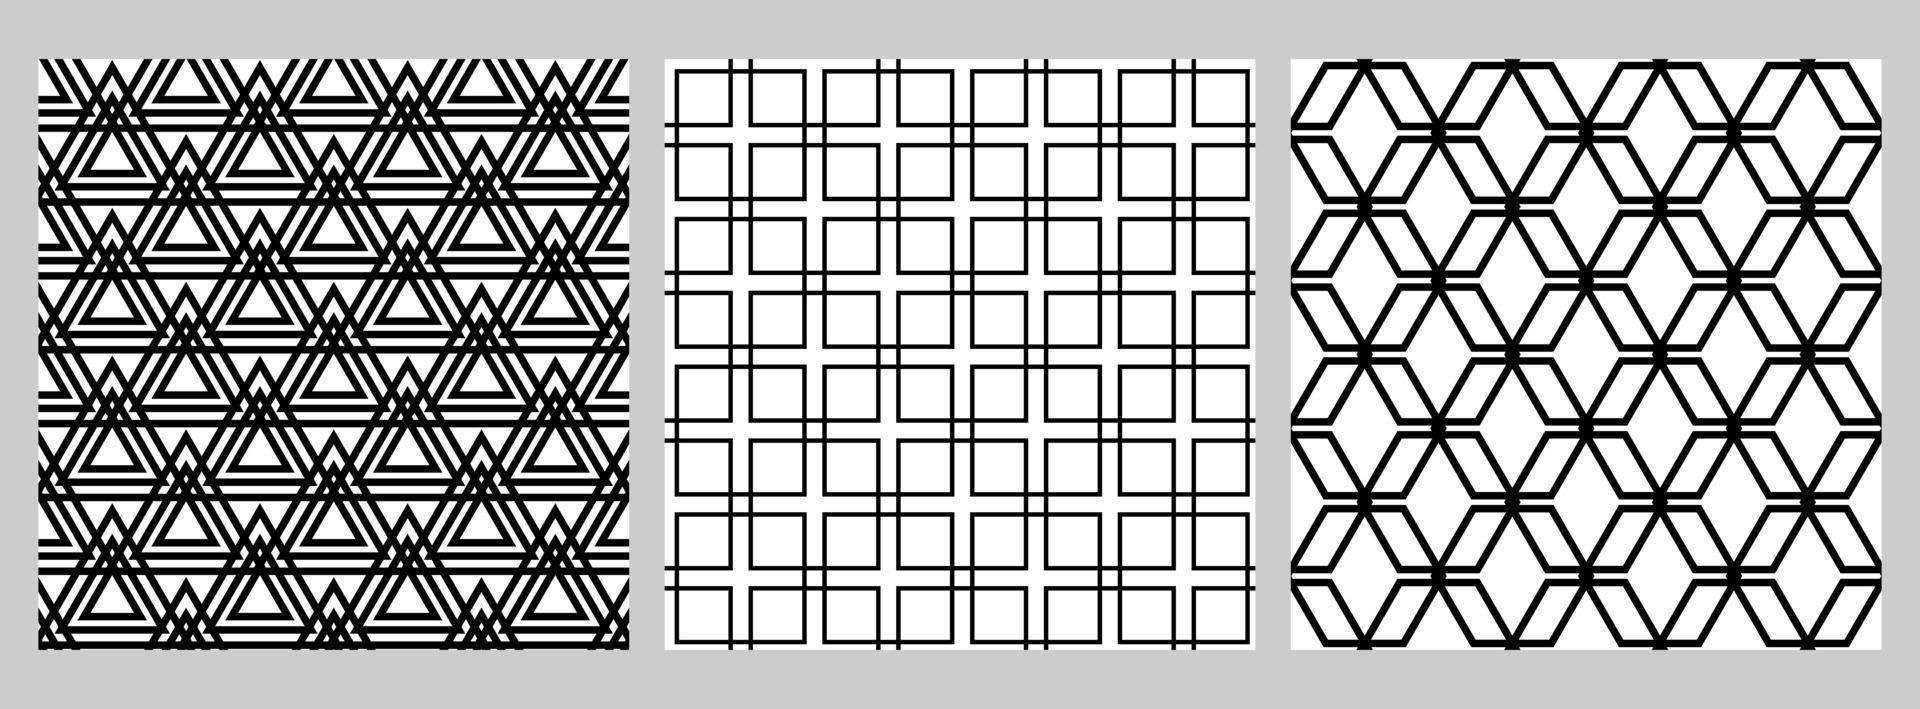 conjunto de patrones geométricos sin fisuras con figuras dispuestas en una cuadrícula. formas negras sobre fondo blanco. cuadrado, rombo, triángulo. vector